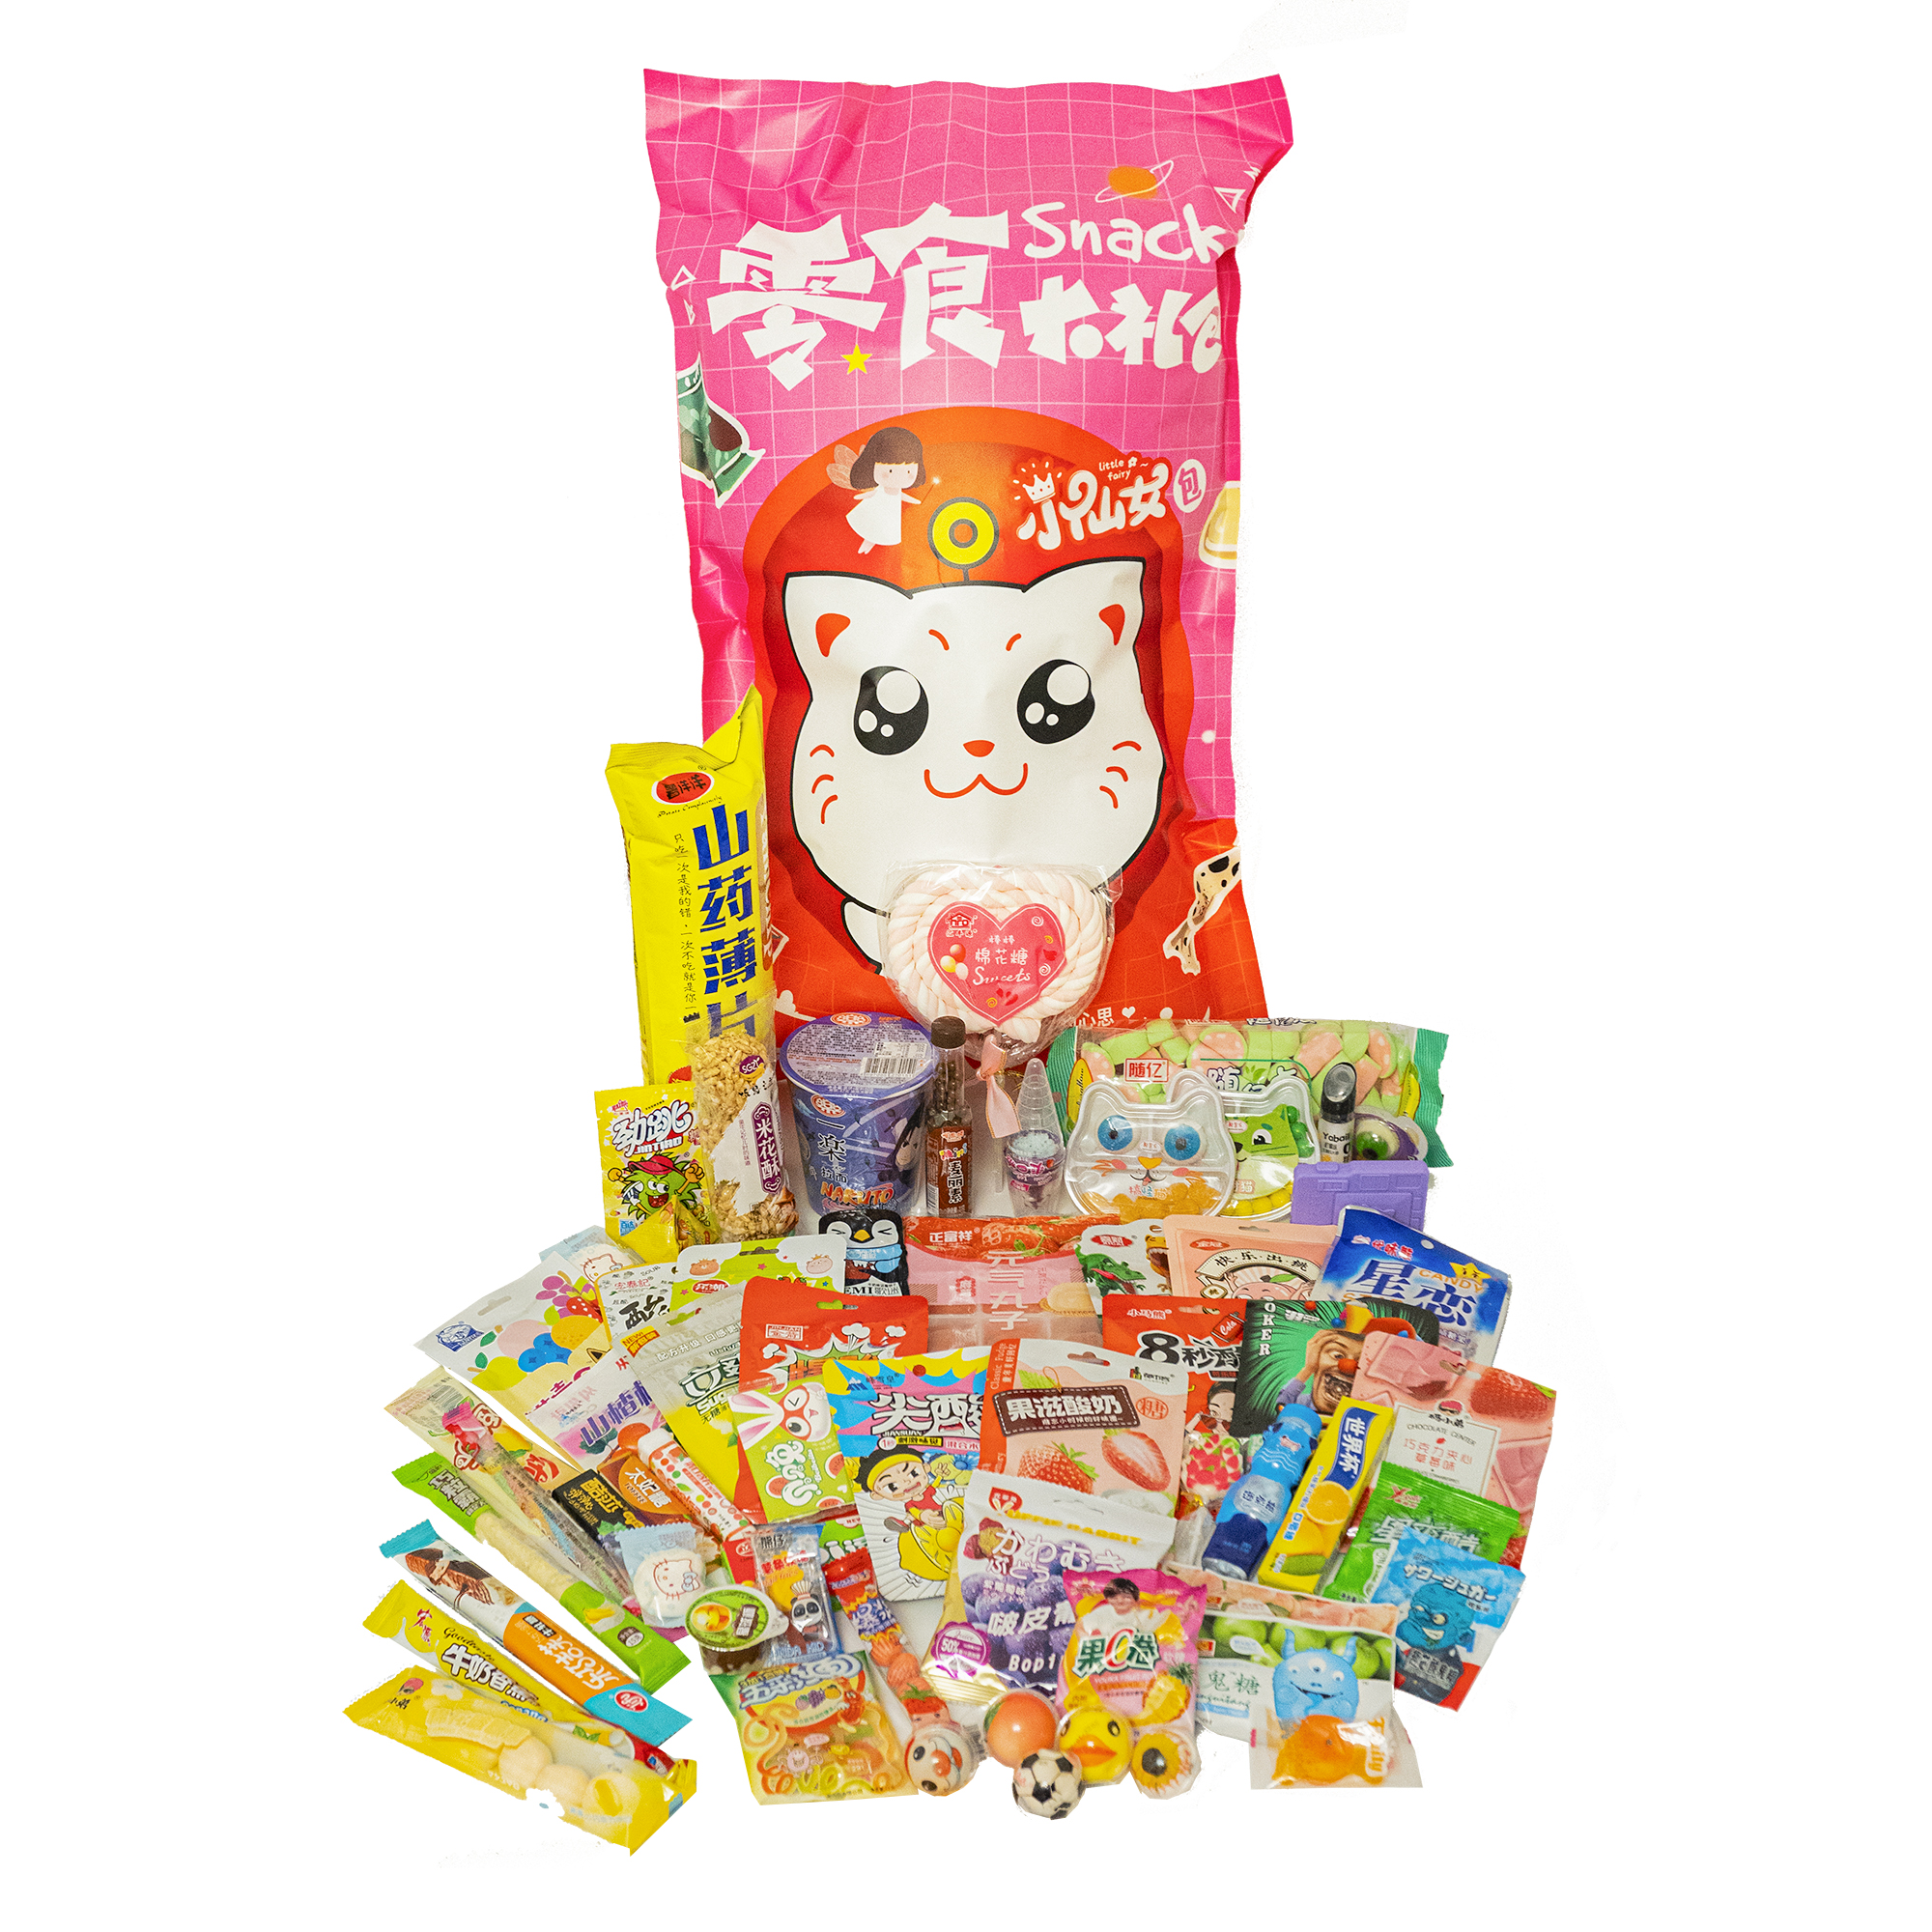 Пакет сладостей Yokee Pinky кот. Вкусняшки для детей в индивидуальной упаковке. Мармеладная лапша. Вкусняшки в пакете. Мешки со сладостями